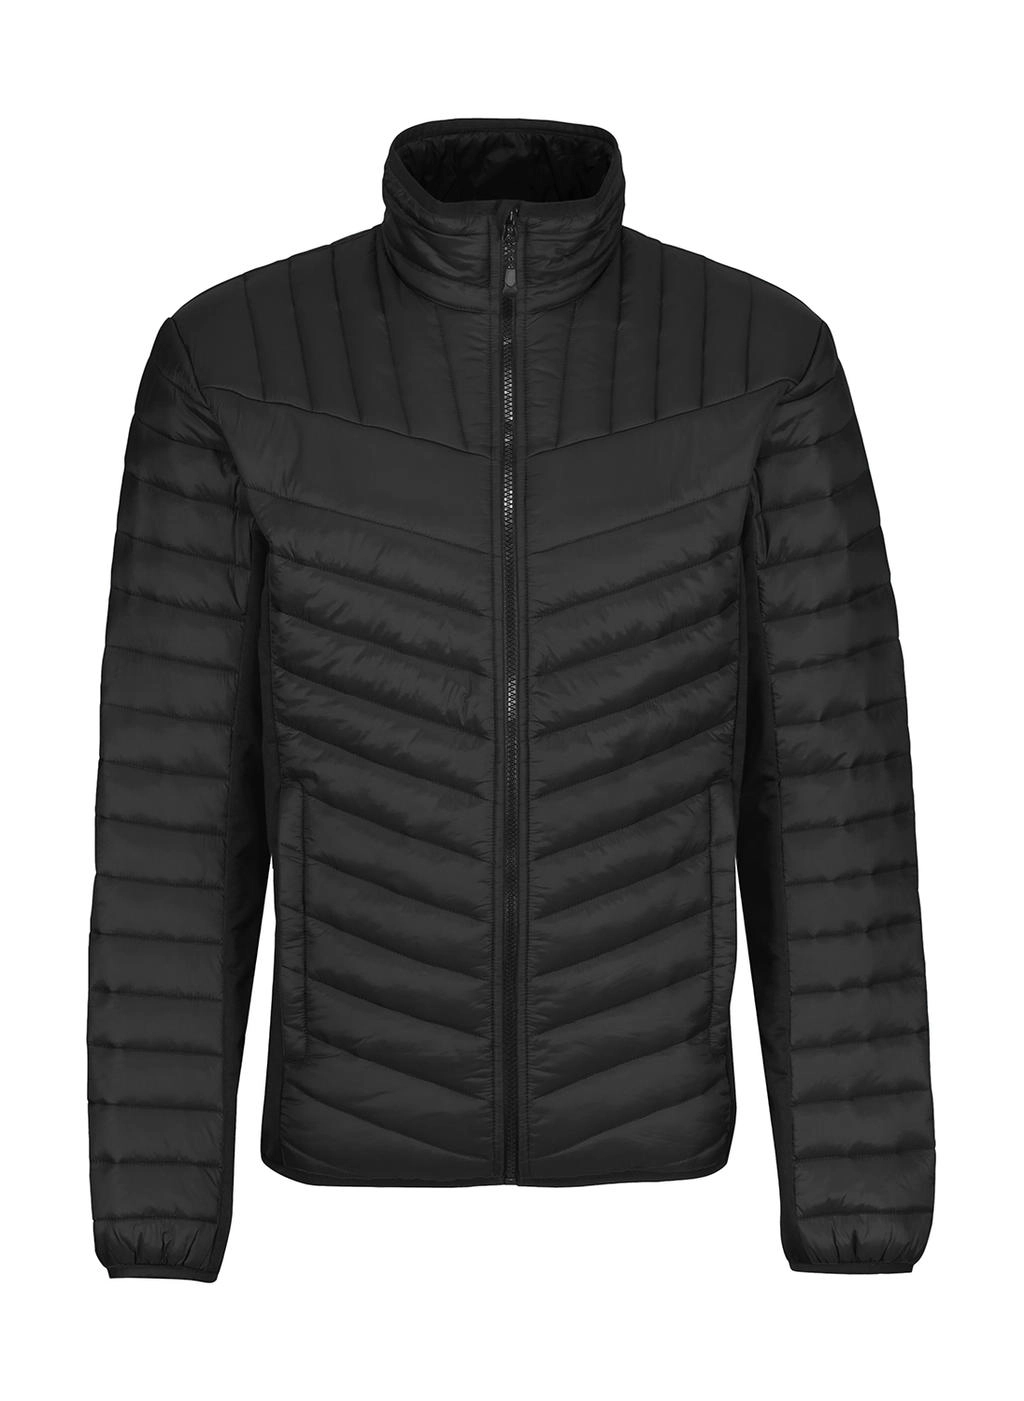 Tourer Hybrid Jacket zum Besticken und Bedrucken in der Farbe Black mit Ihren Logo, Schriftzug oder Motiv.